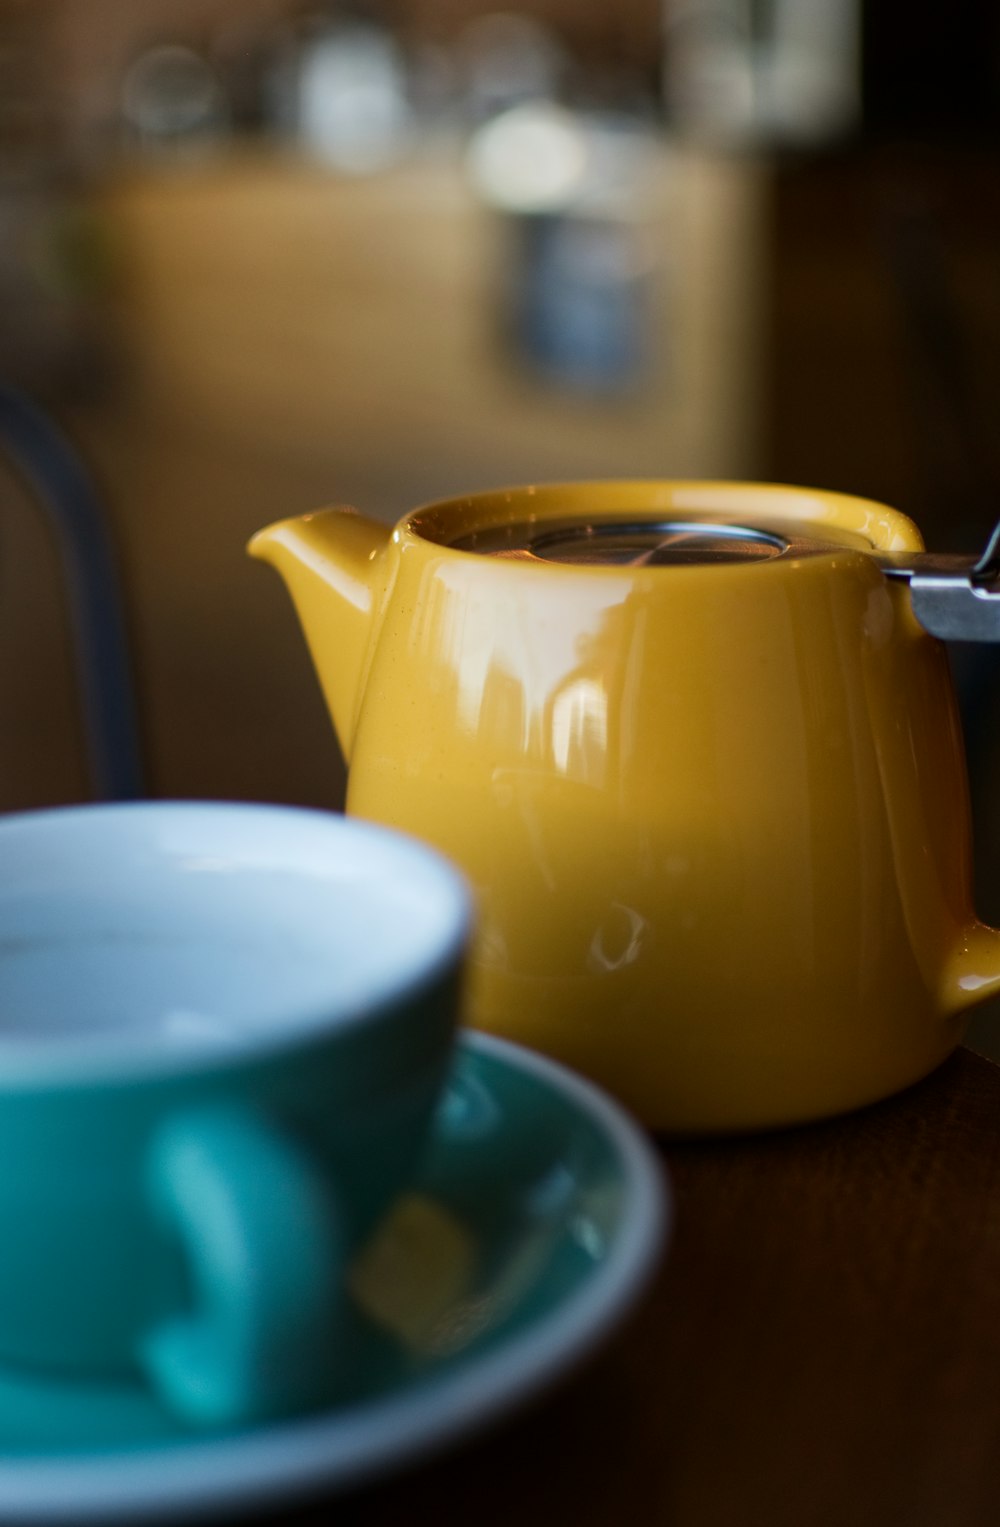 shallow focus photography of yellow ceramic teapot